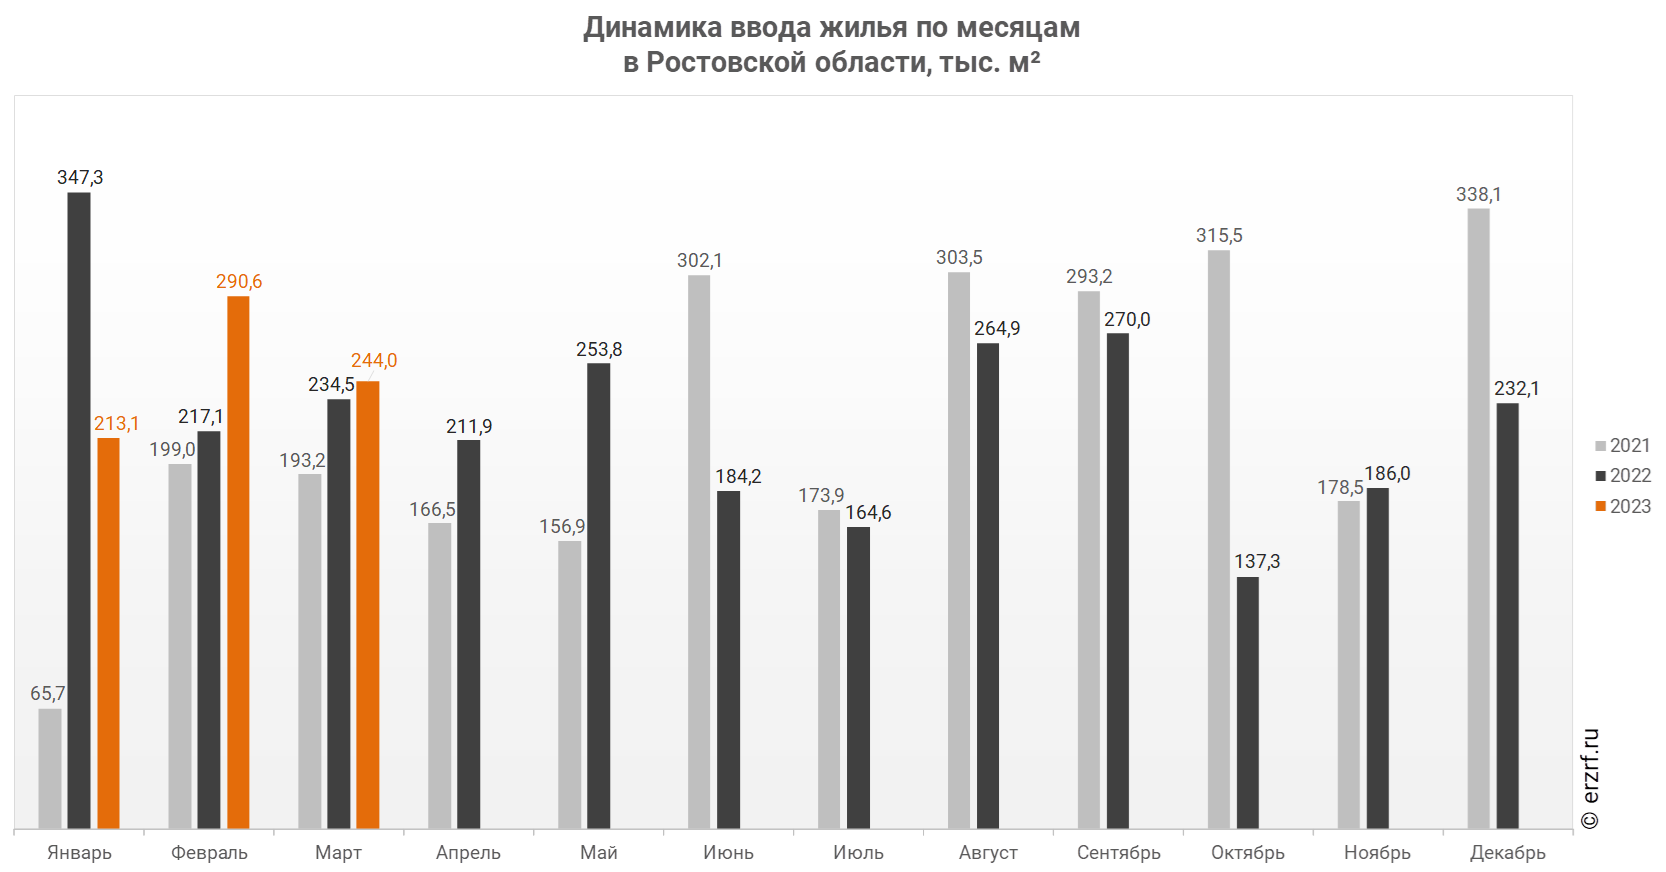 Динамика ввода жилья по месяцам 
в Ростовской области, тыс. м²